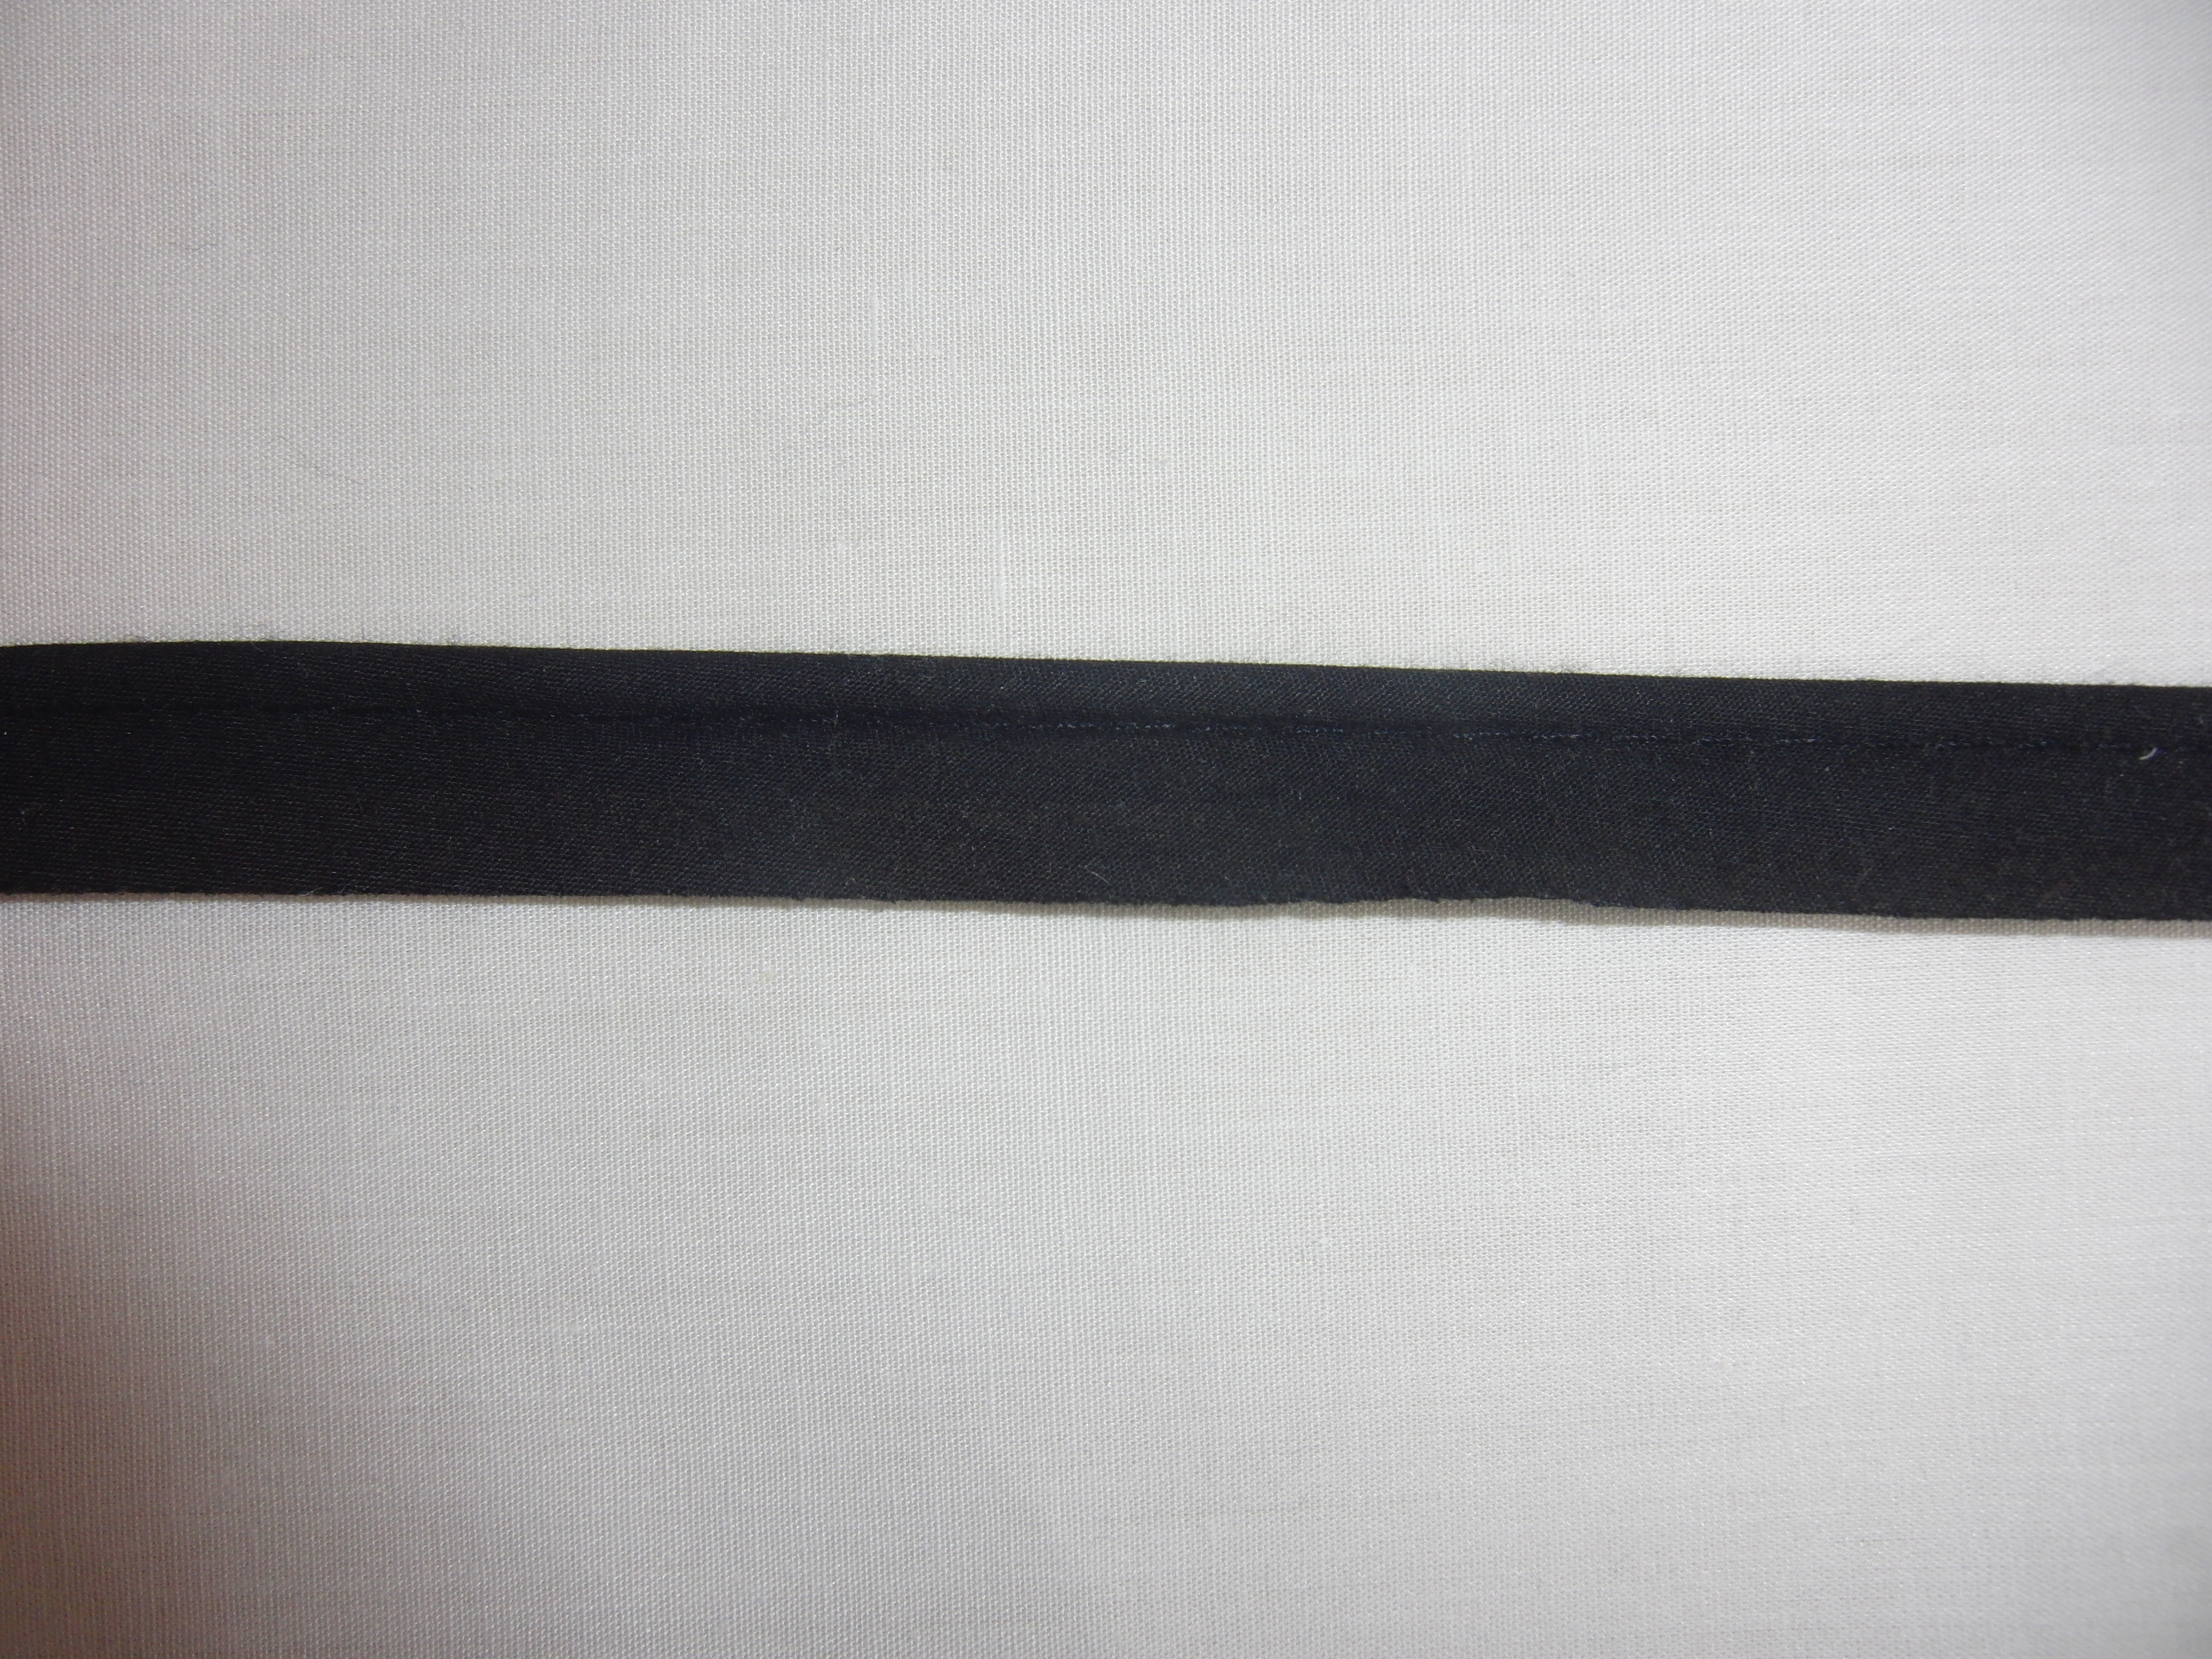 Kederband - Gewicht: 80 g/m² - Länge: 10 m - Breite: 15 mm - Farbe: schwarz